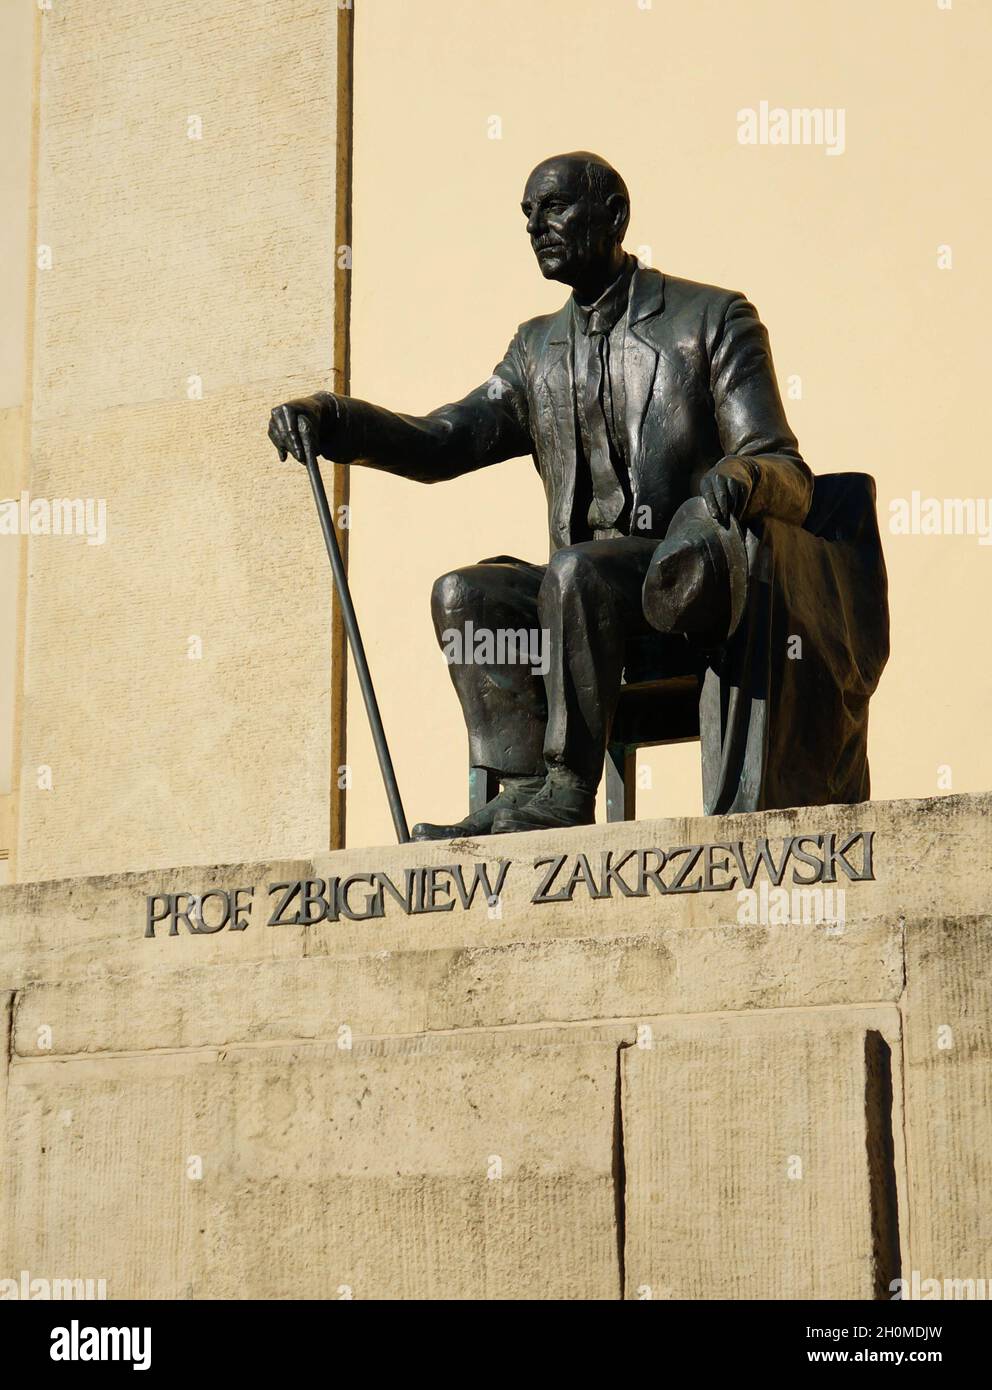 POZNAN, POLAND - Oct 18, 2015: The Statue of Professor Zbigniew Zakrzewski by the university building Stock Photo